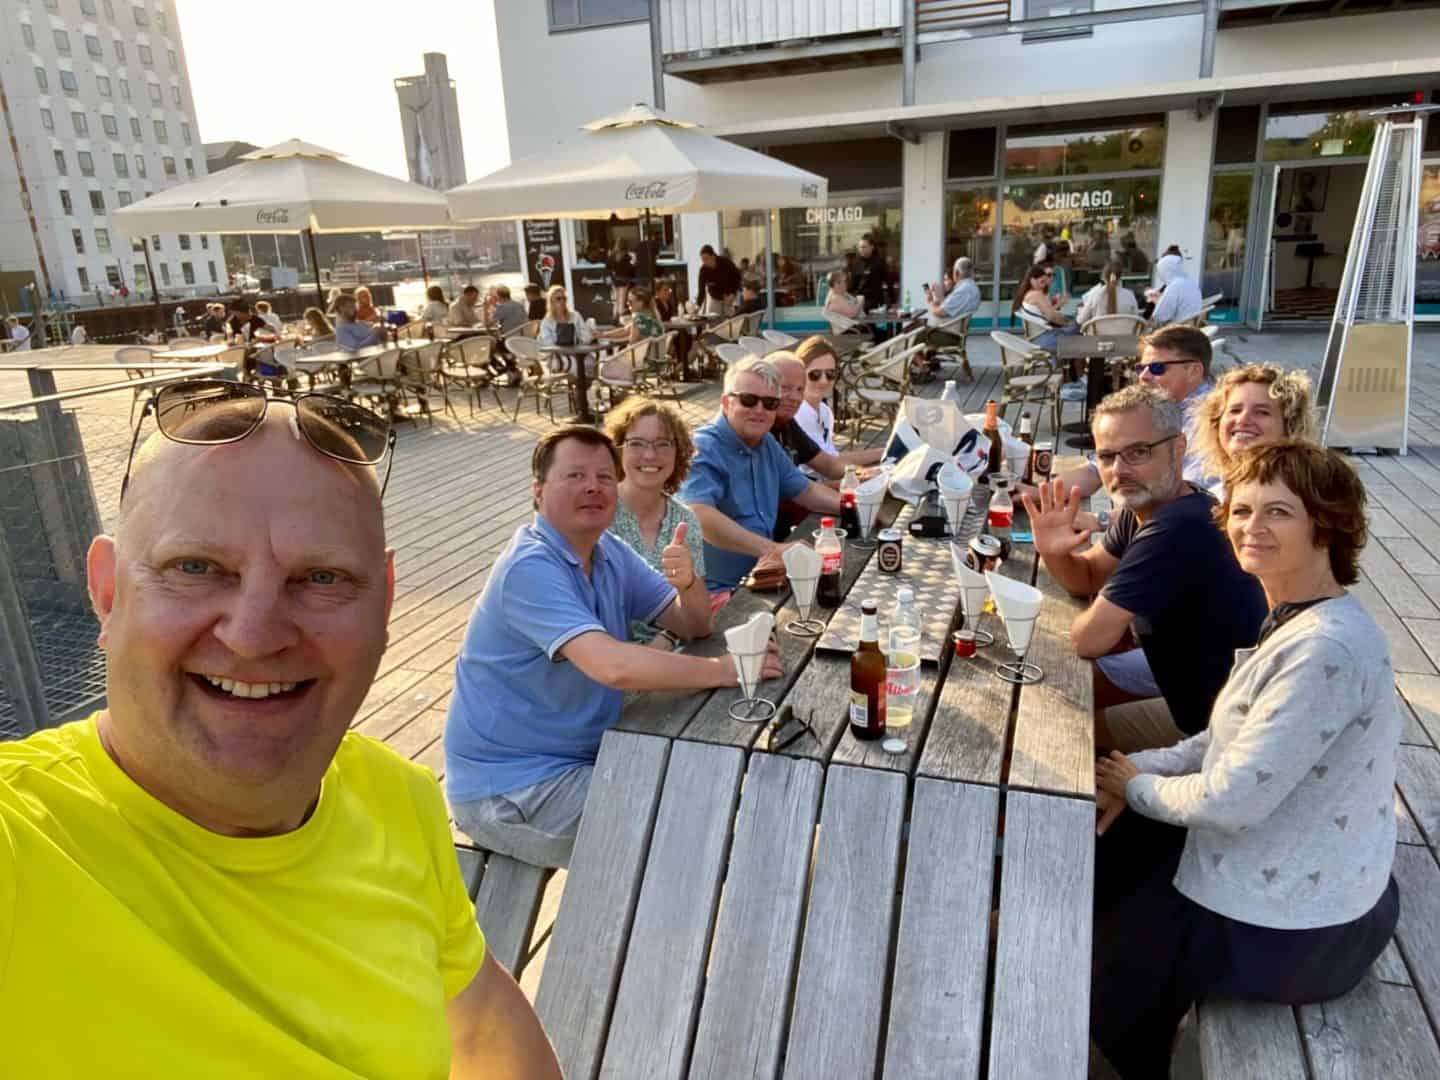 Da vi mødtes med gode venner fredag oplevede vi super god service hos Chicago Burger på havnepladsen i Odense